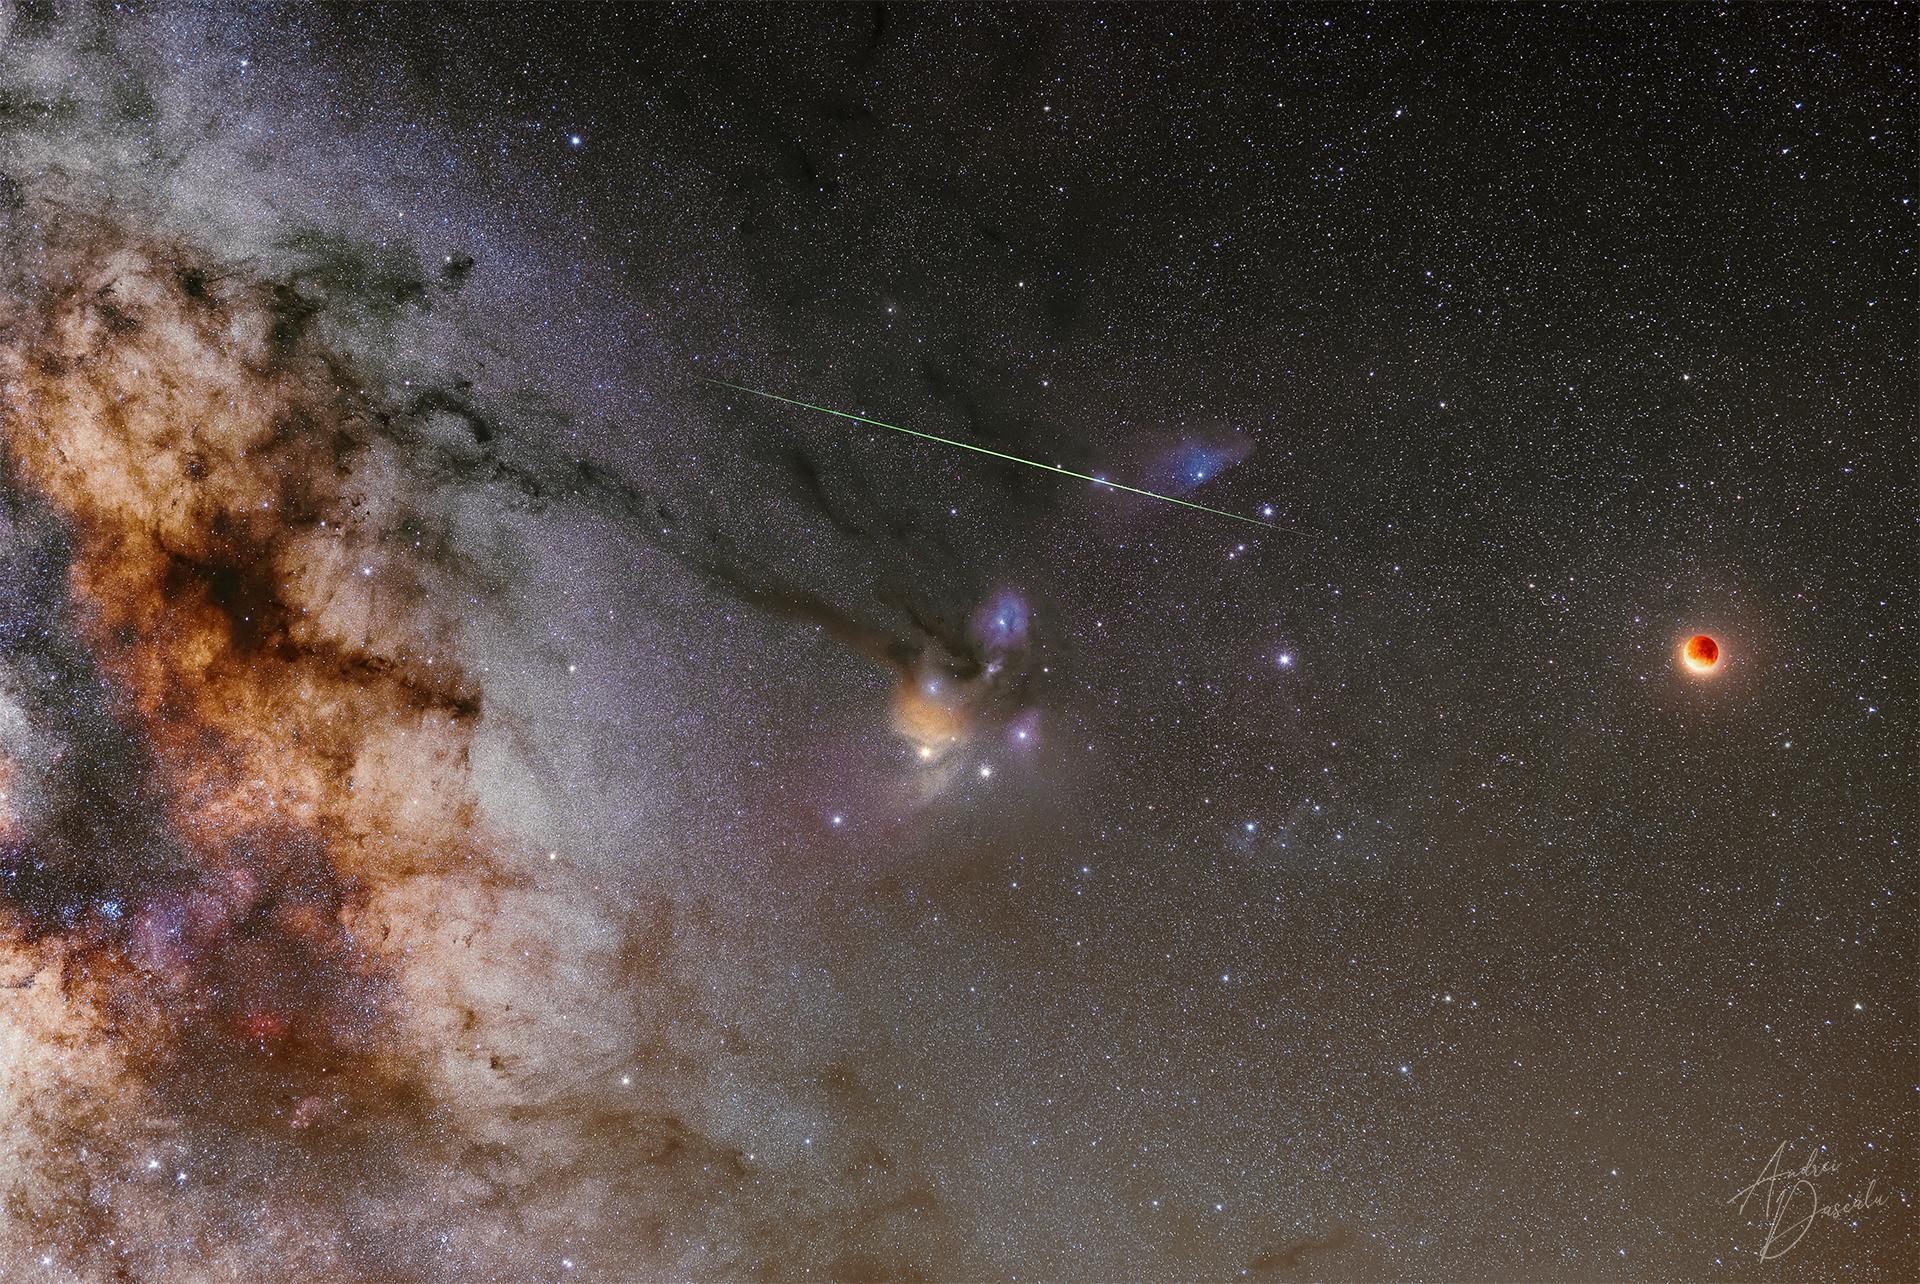 قمر مخسوف محمرّ على اليمين بينما يعبر شهاب أعلى وسط الصورة وتحته سديم فيه نجوم ساطعة وعلى اليسار النطاق المركزي لدرب التبّانة بينما تتناثر النجوم عبر الصورة